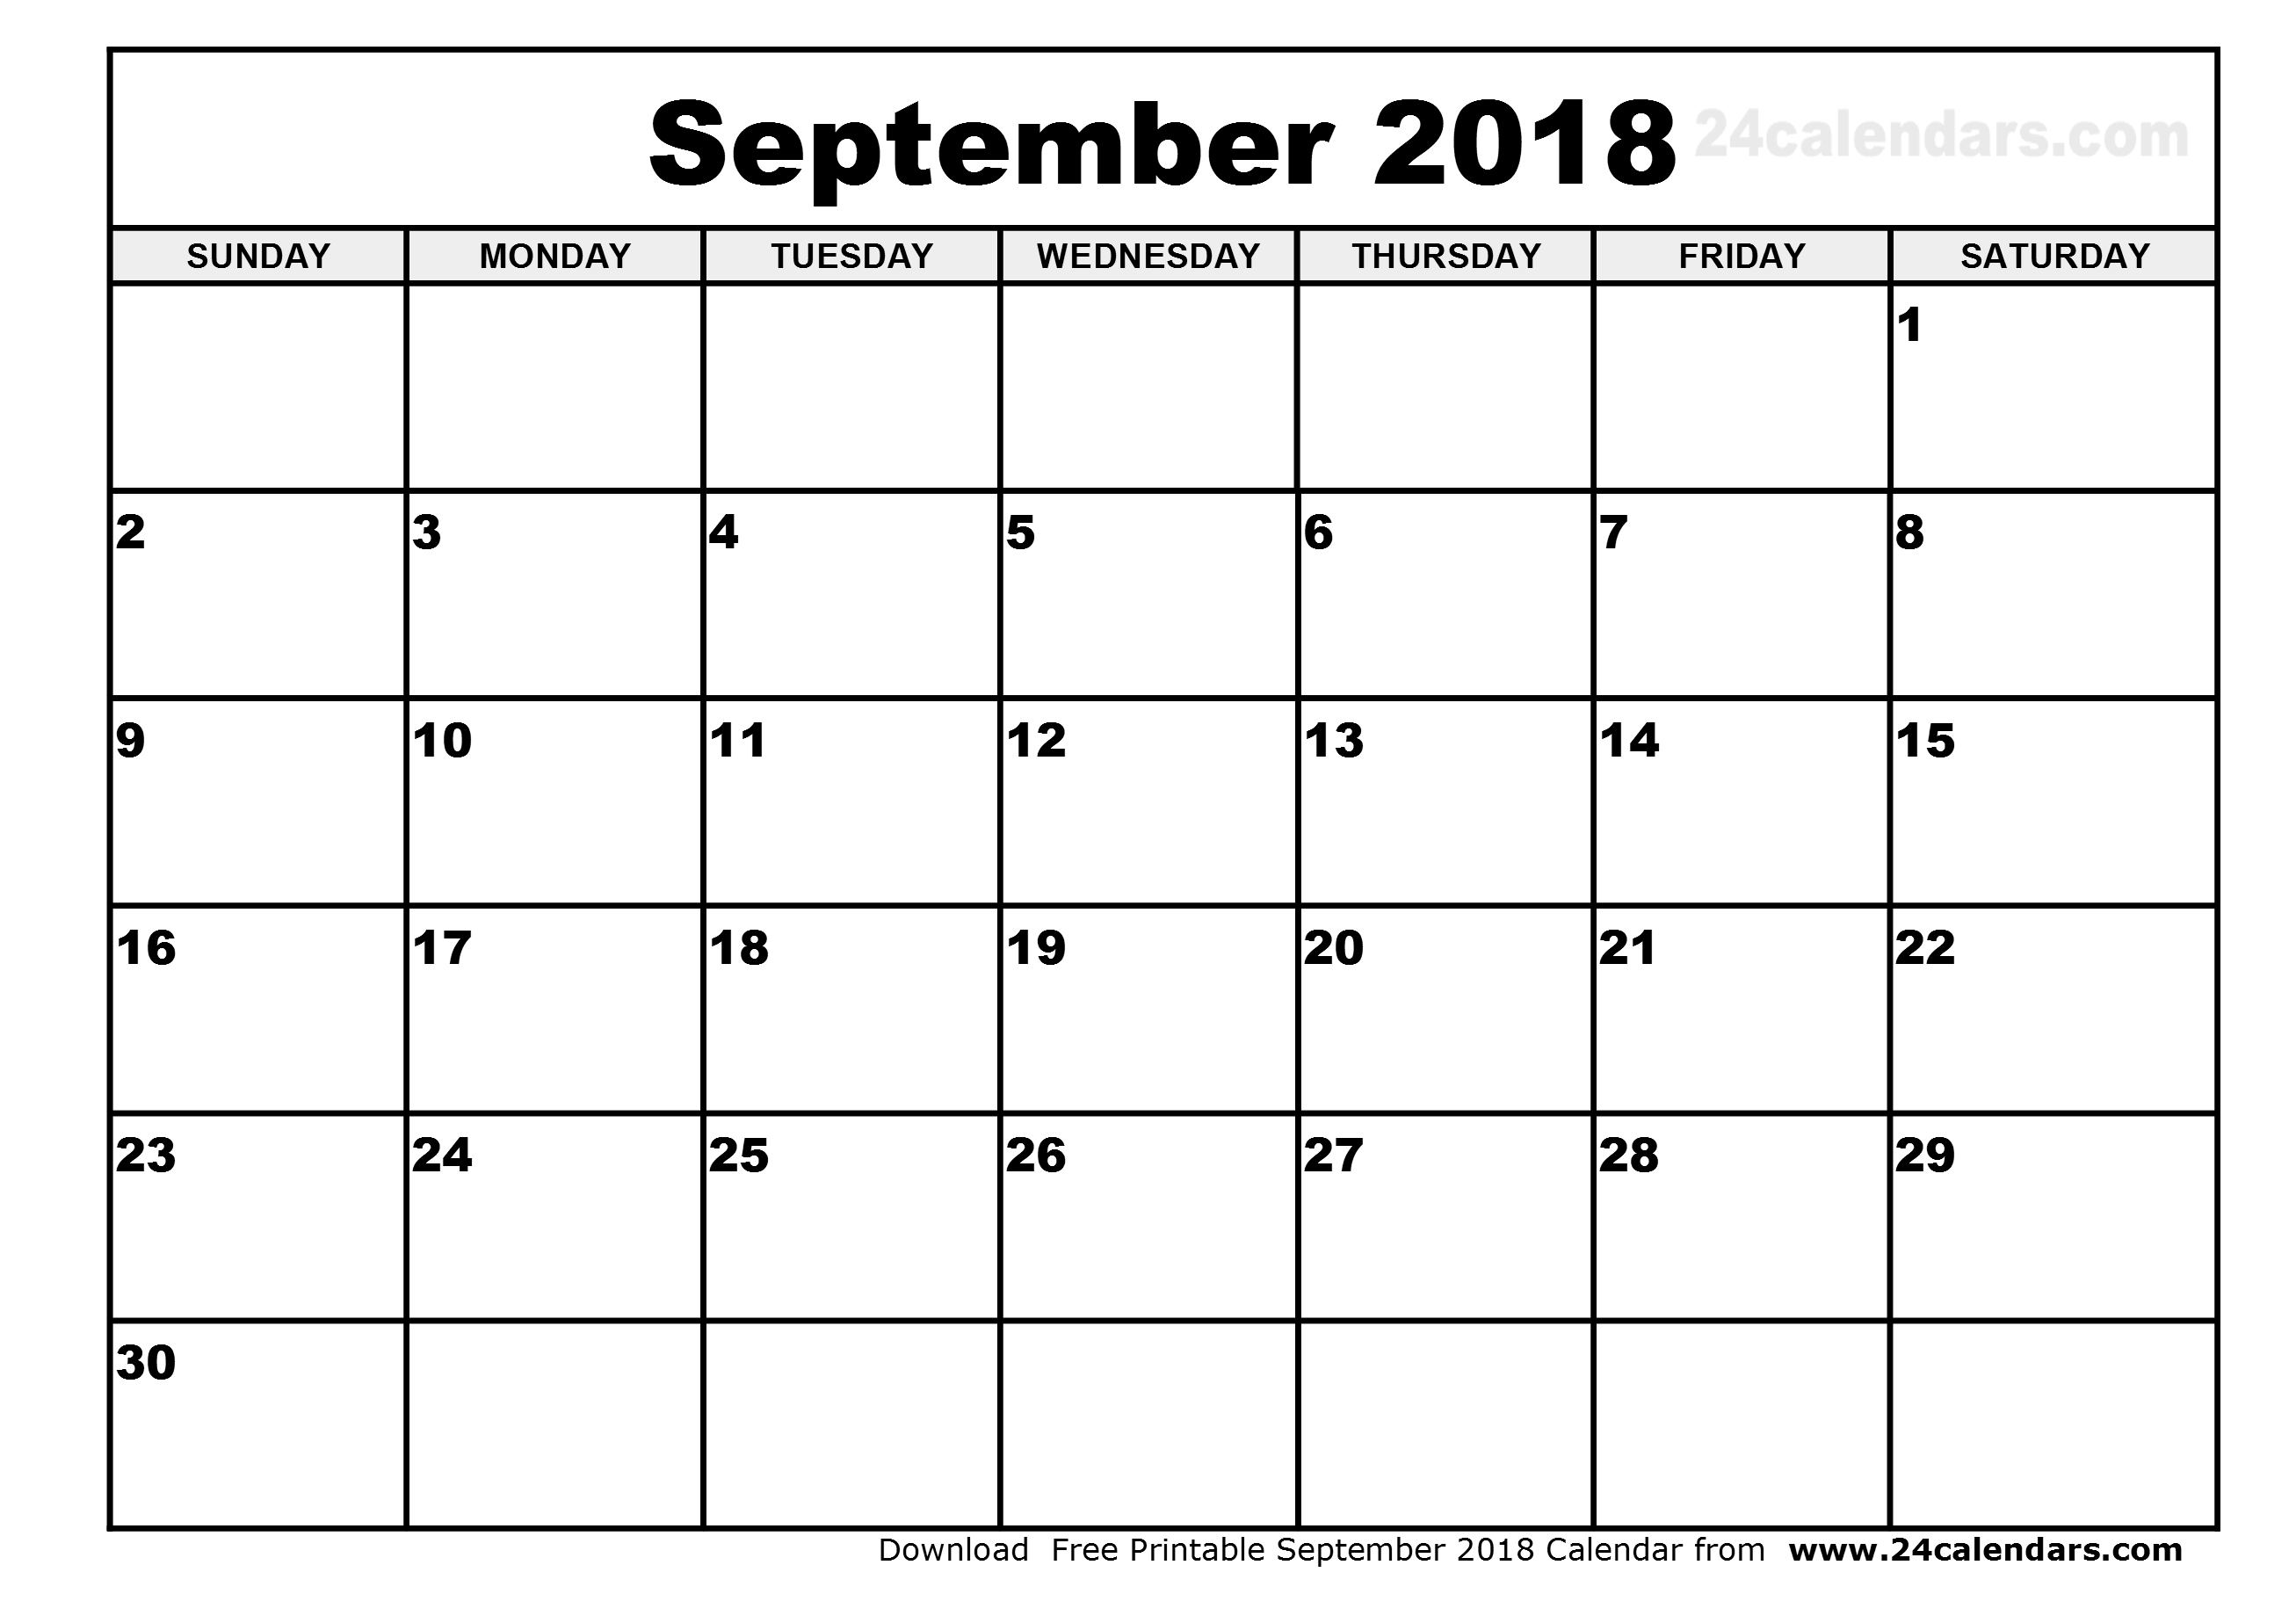 September 2018 Calendar Clipart.